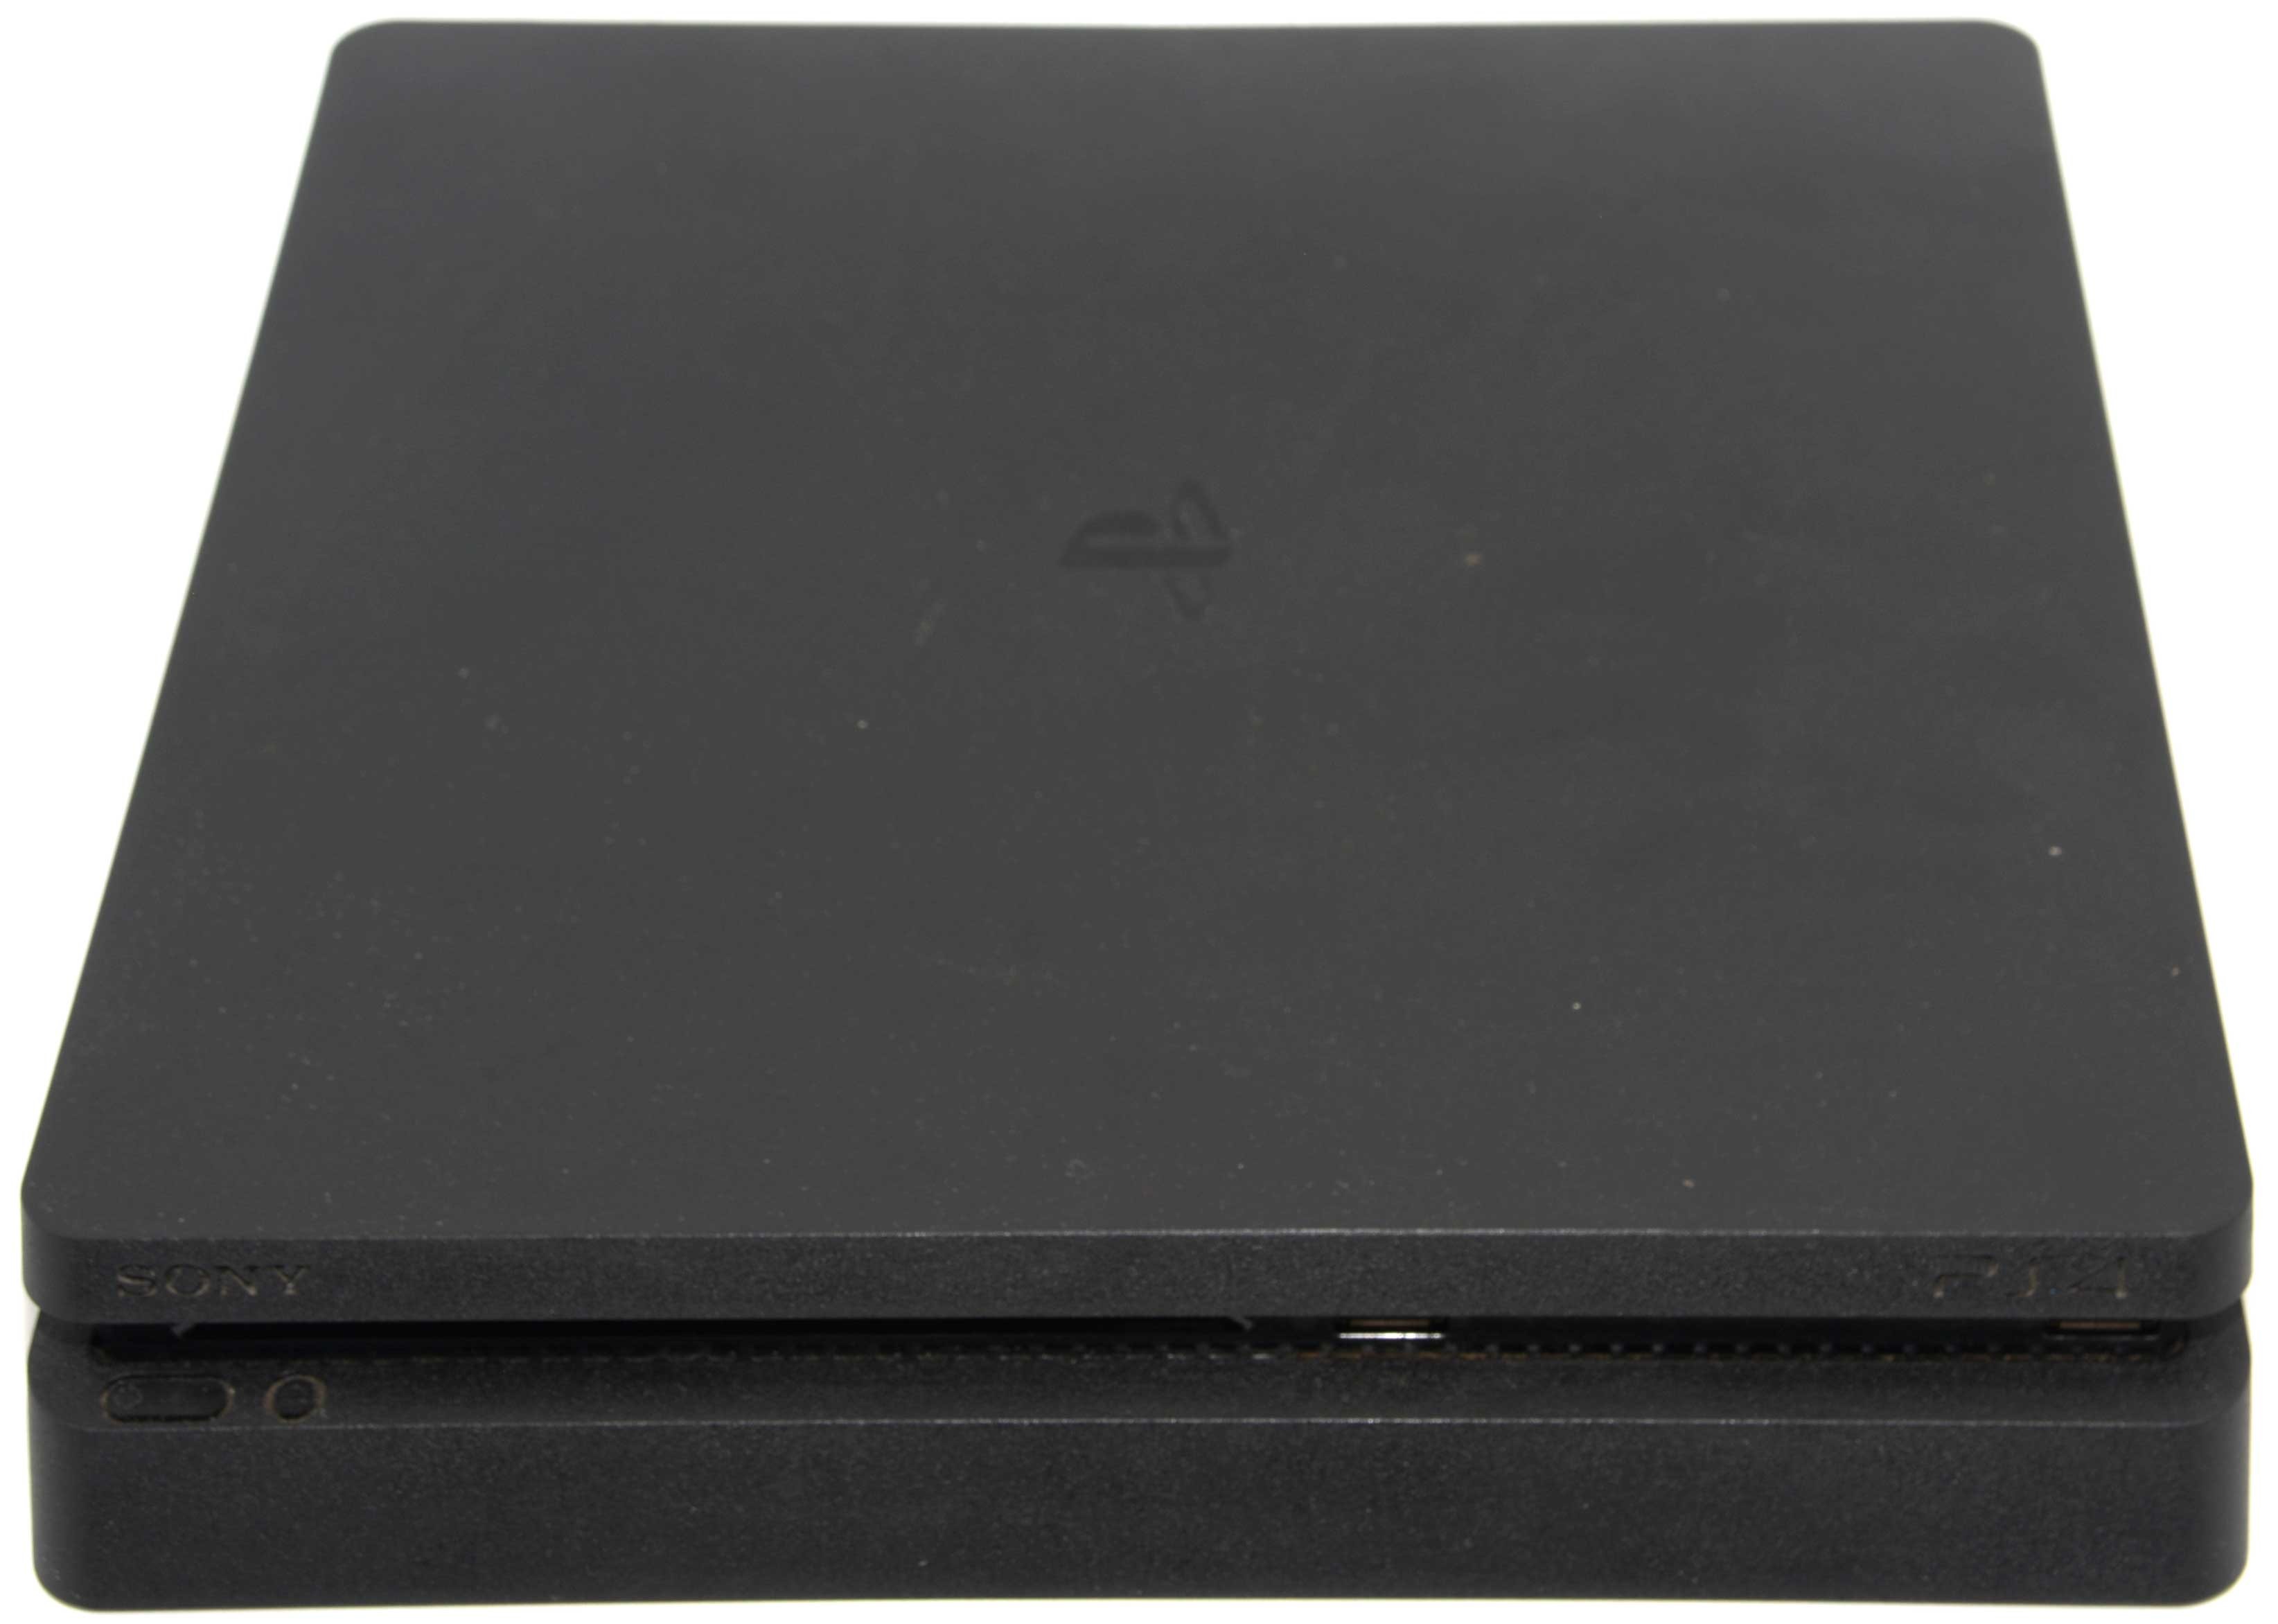 Sony PlayStation 4 PS4 Slim 1 TB 2116B + Mando Consola Segunda Mano -   Tienda Online Nuevo y Segunda Mano - Envíos gratis!